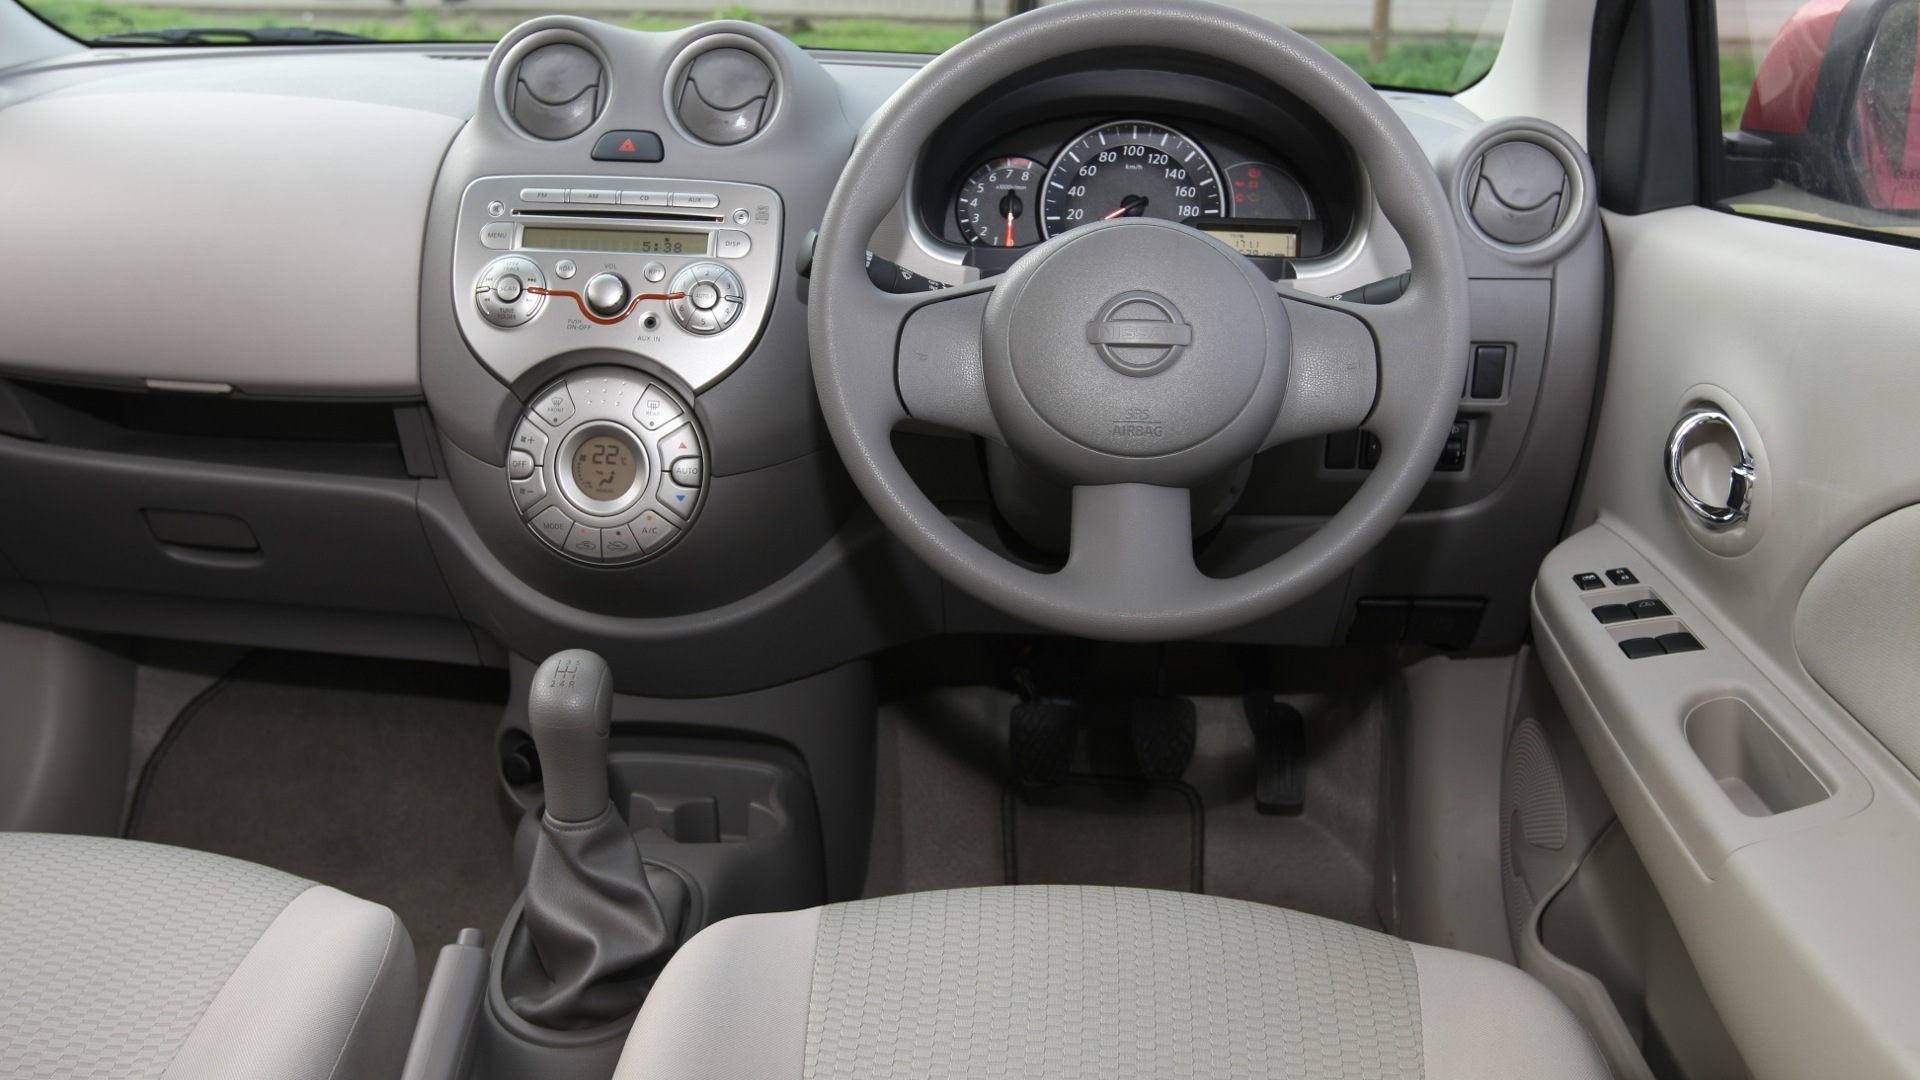 Nissan Micra 2013 Xe Interior Car Photos Overdrive